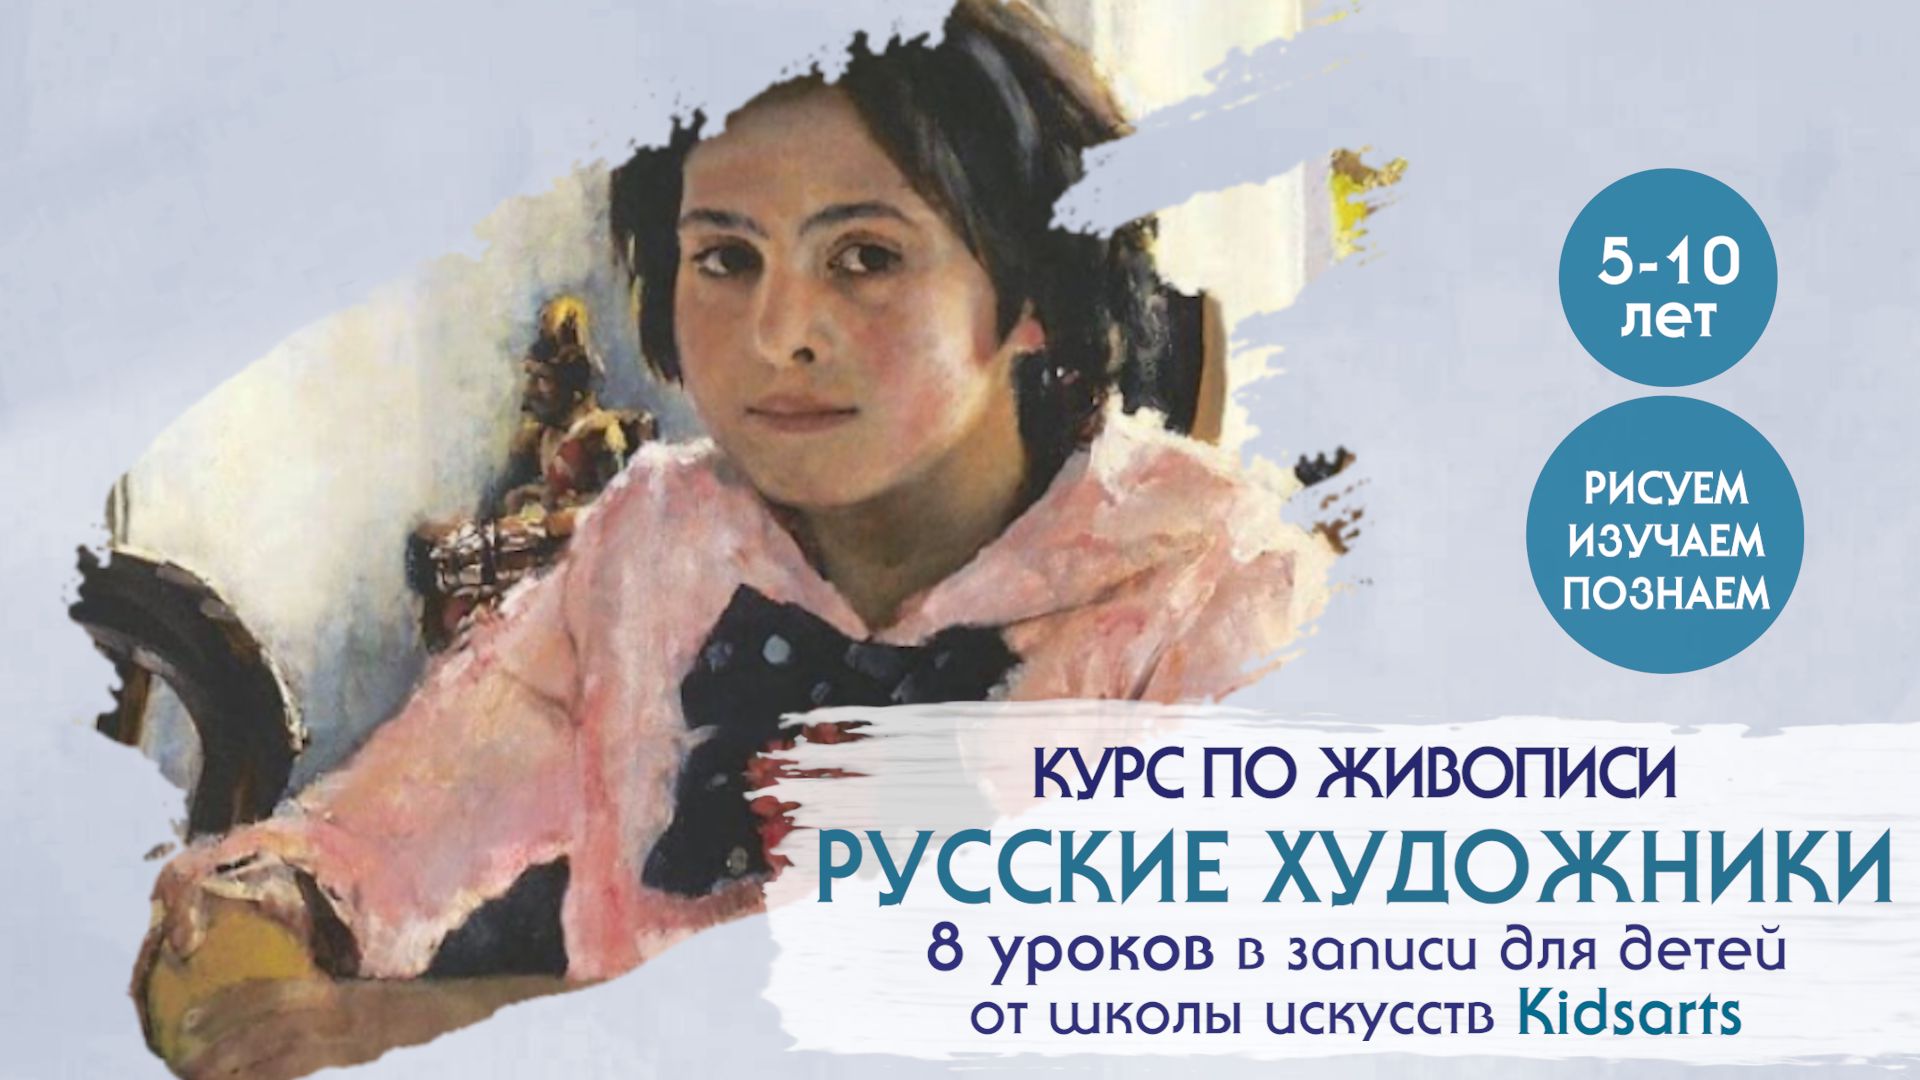 8 уроков по ЖИВОПИСИ для детей  "Русские художники 19-20 вв" ( для 5-10 лет)